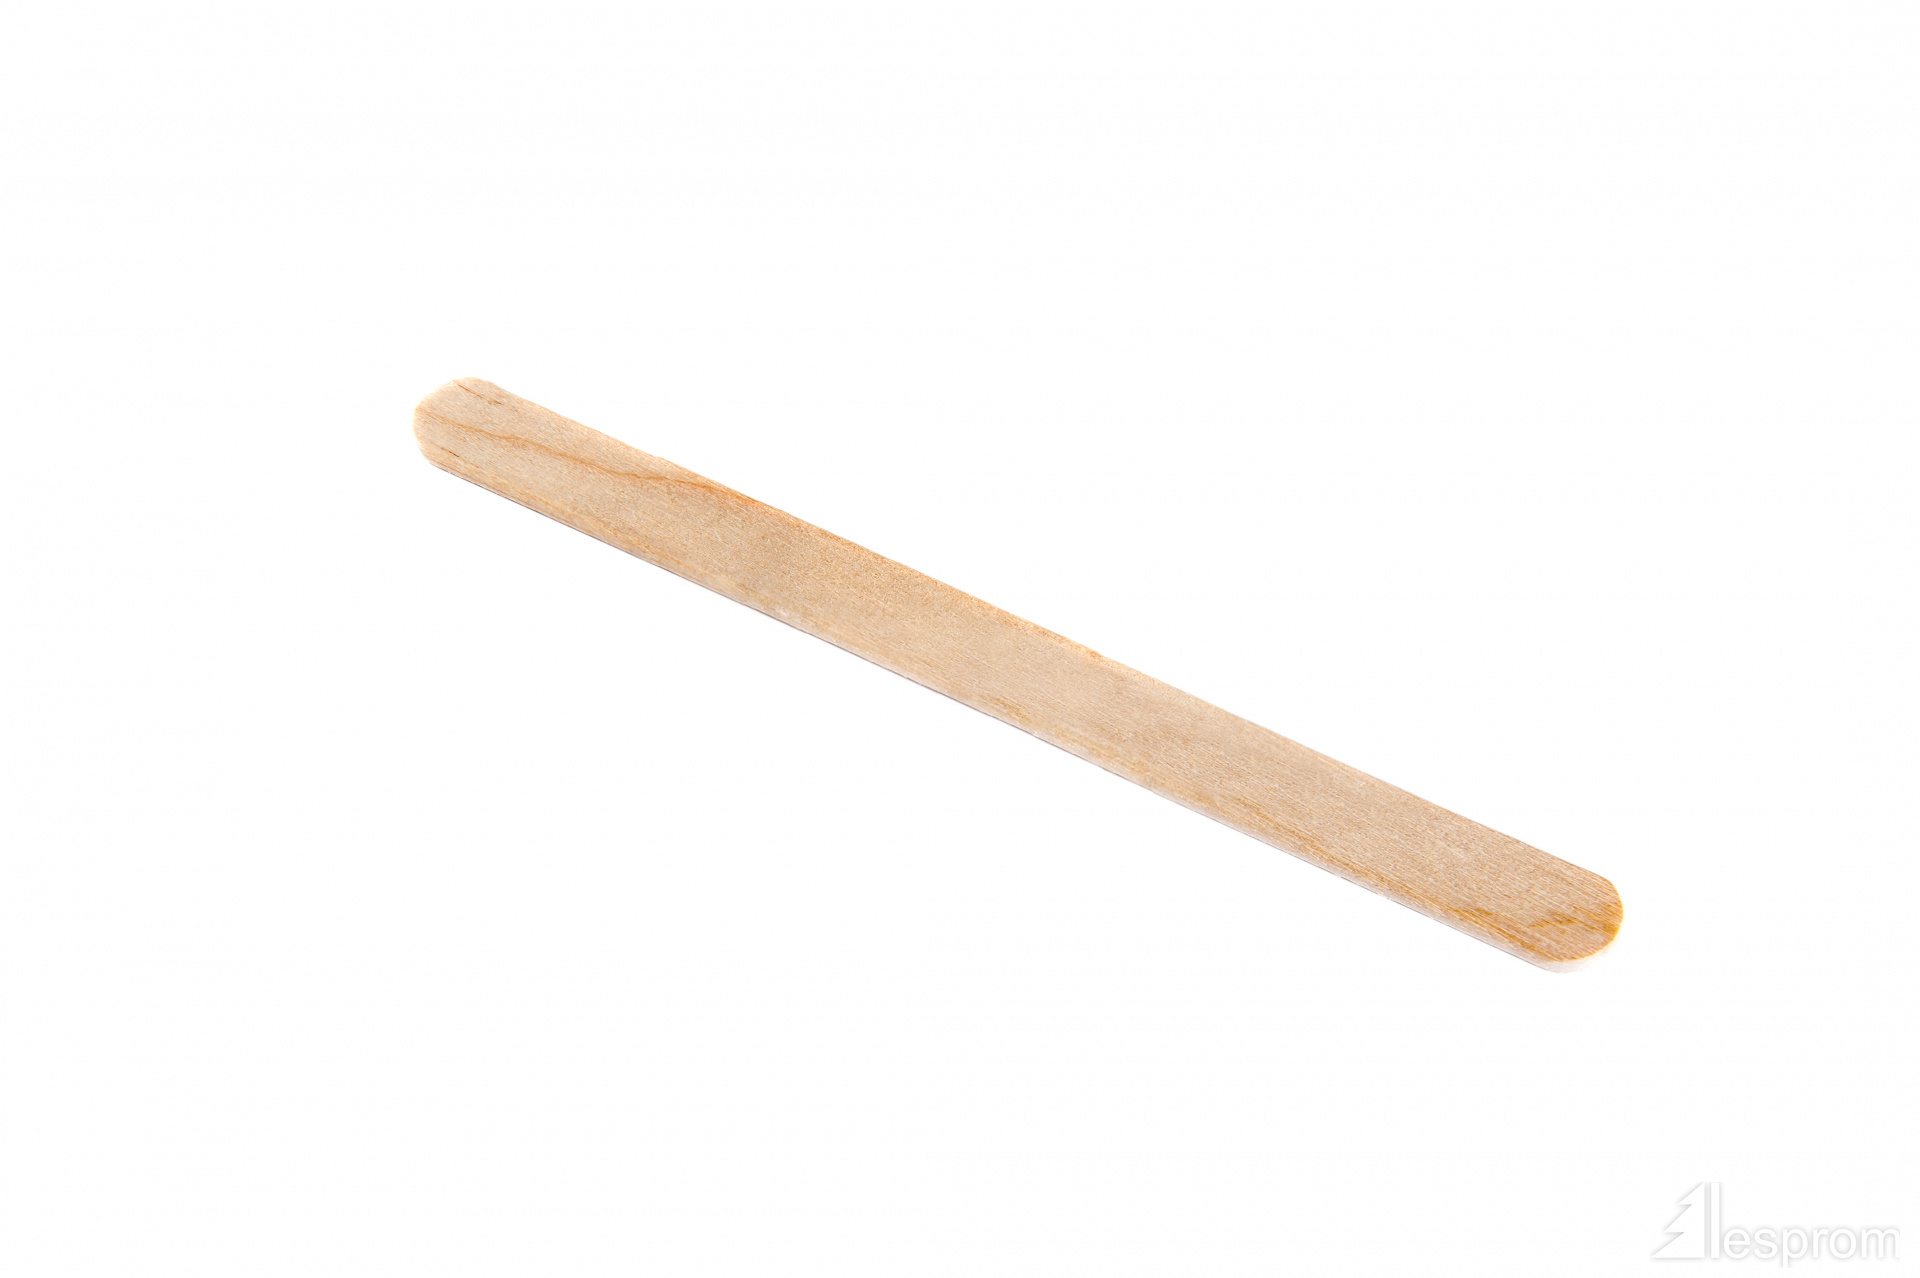 Figured Birch Wooden Sticks for Ice Cream 94 mm x 16 mm x 2 mm